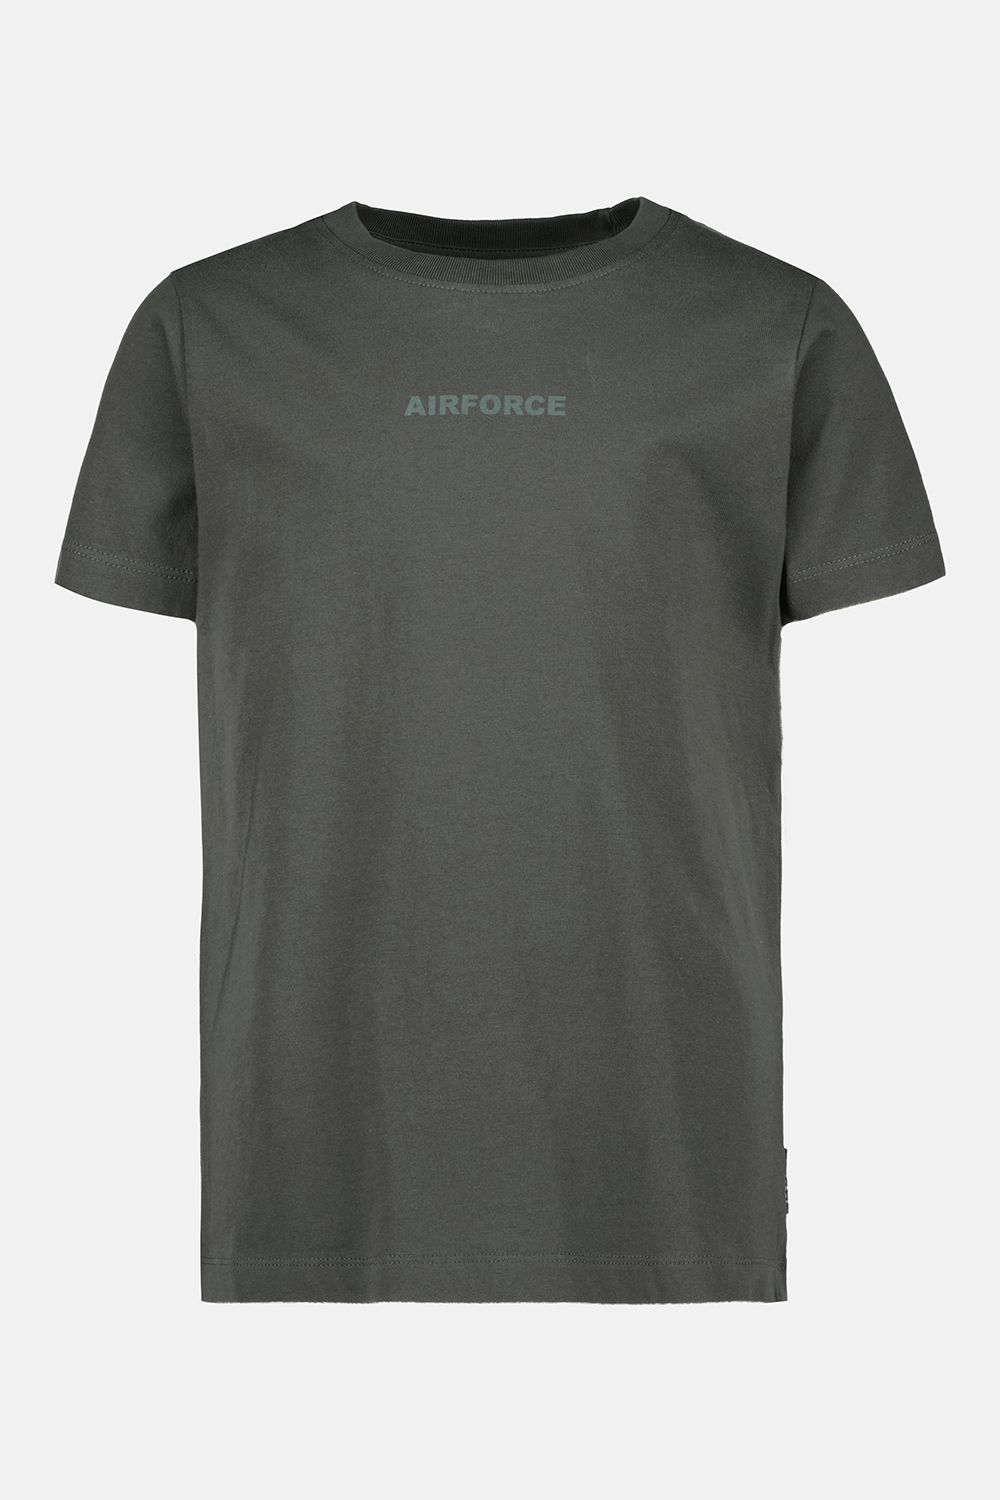 Airforce Airforce Wording/Logo T-Shirt